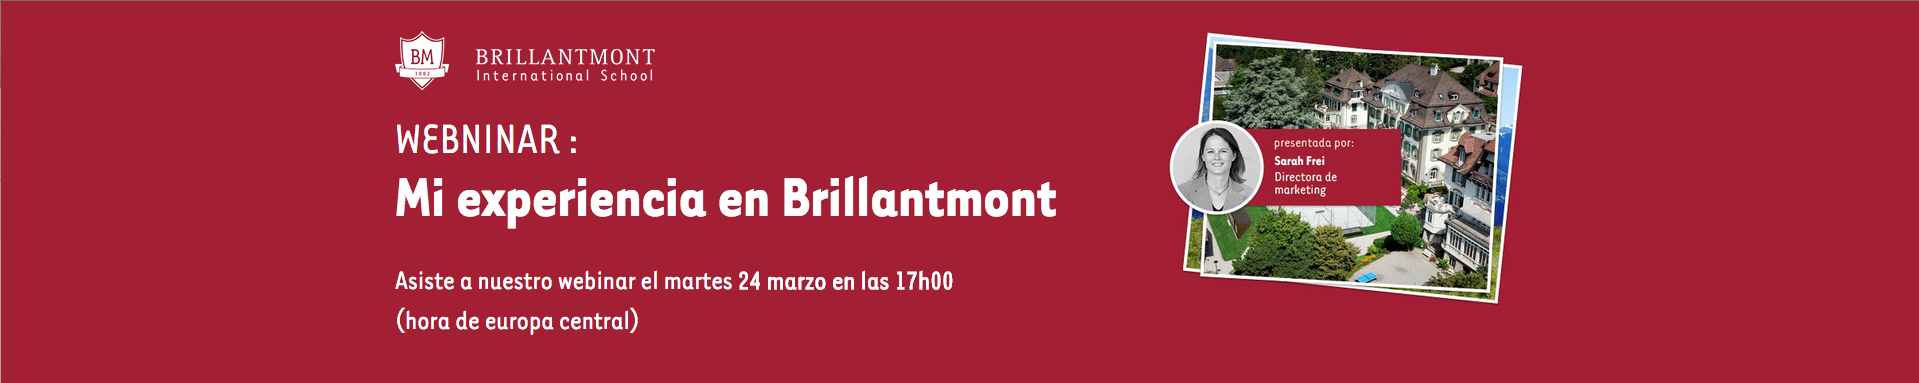 Brillantmont escuela internacional 